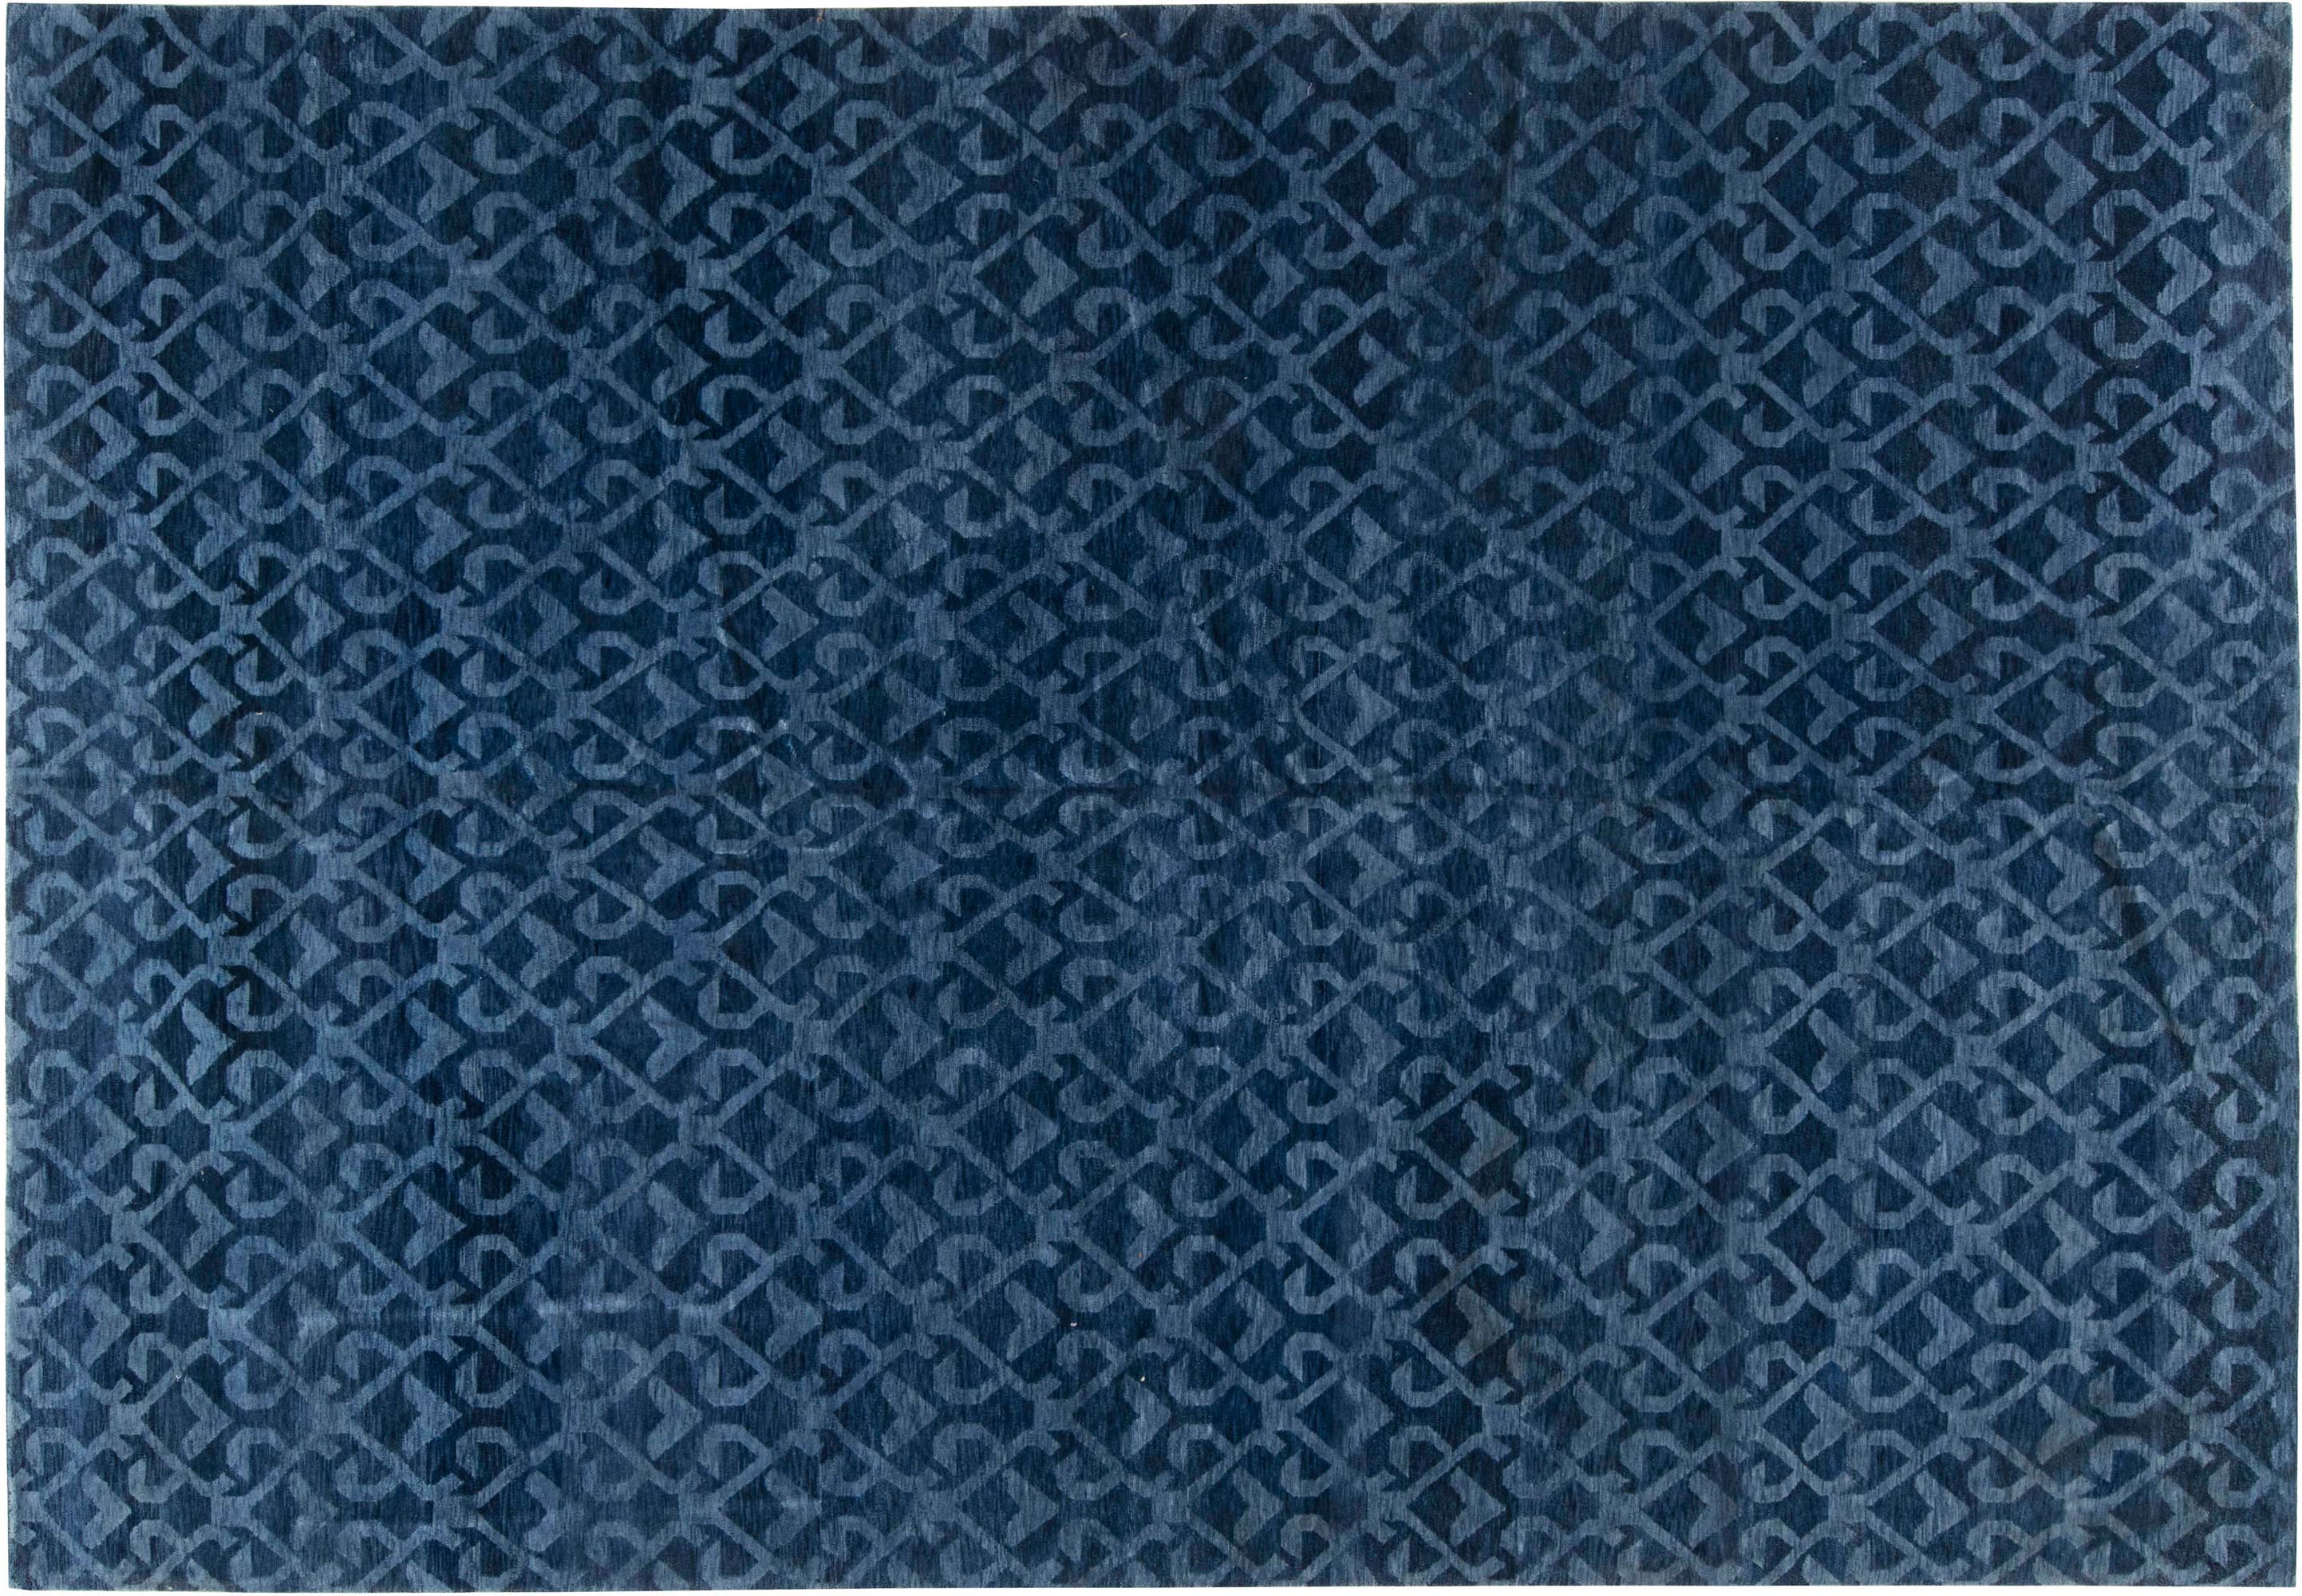 Doris Leslie Blau Collection Navy Blue, Navy Blue Patterned Rug